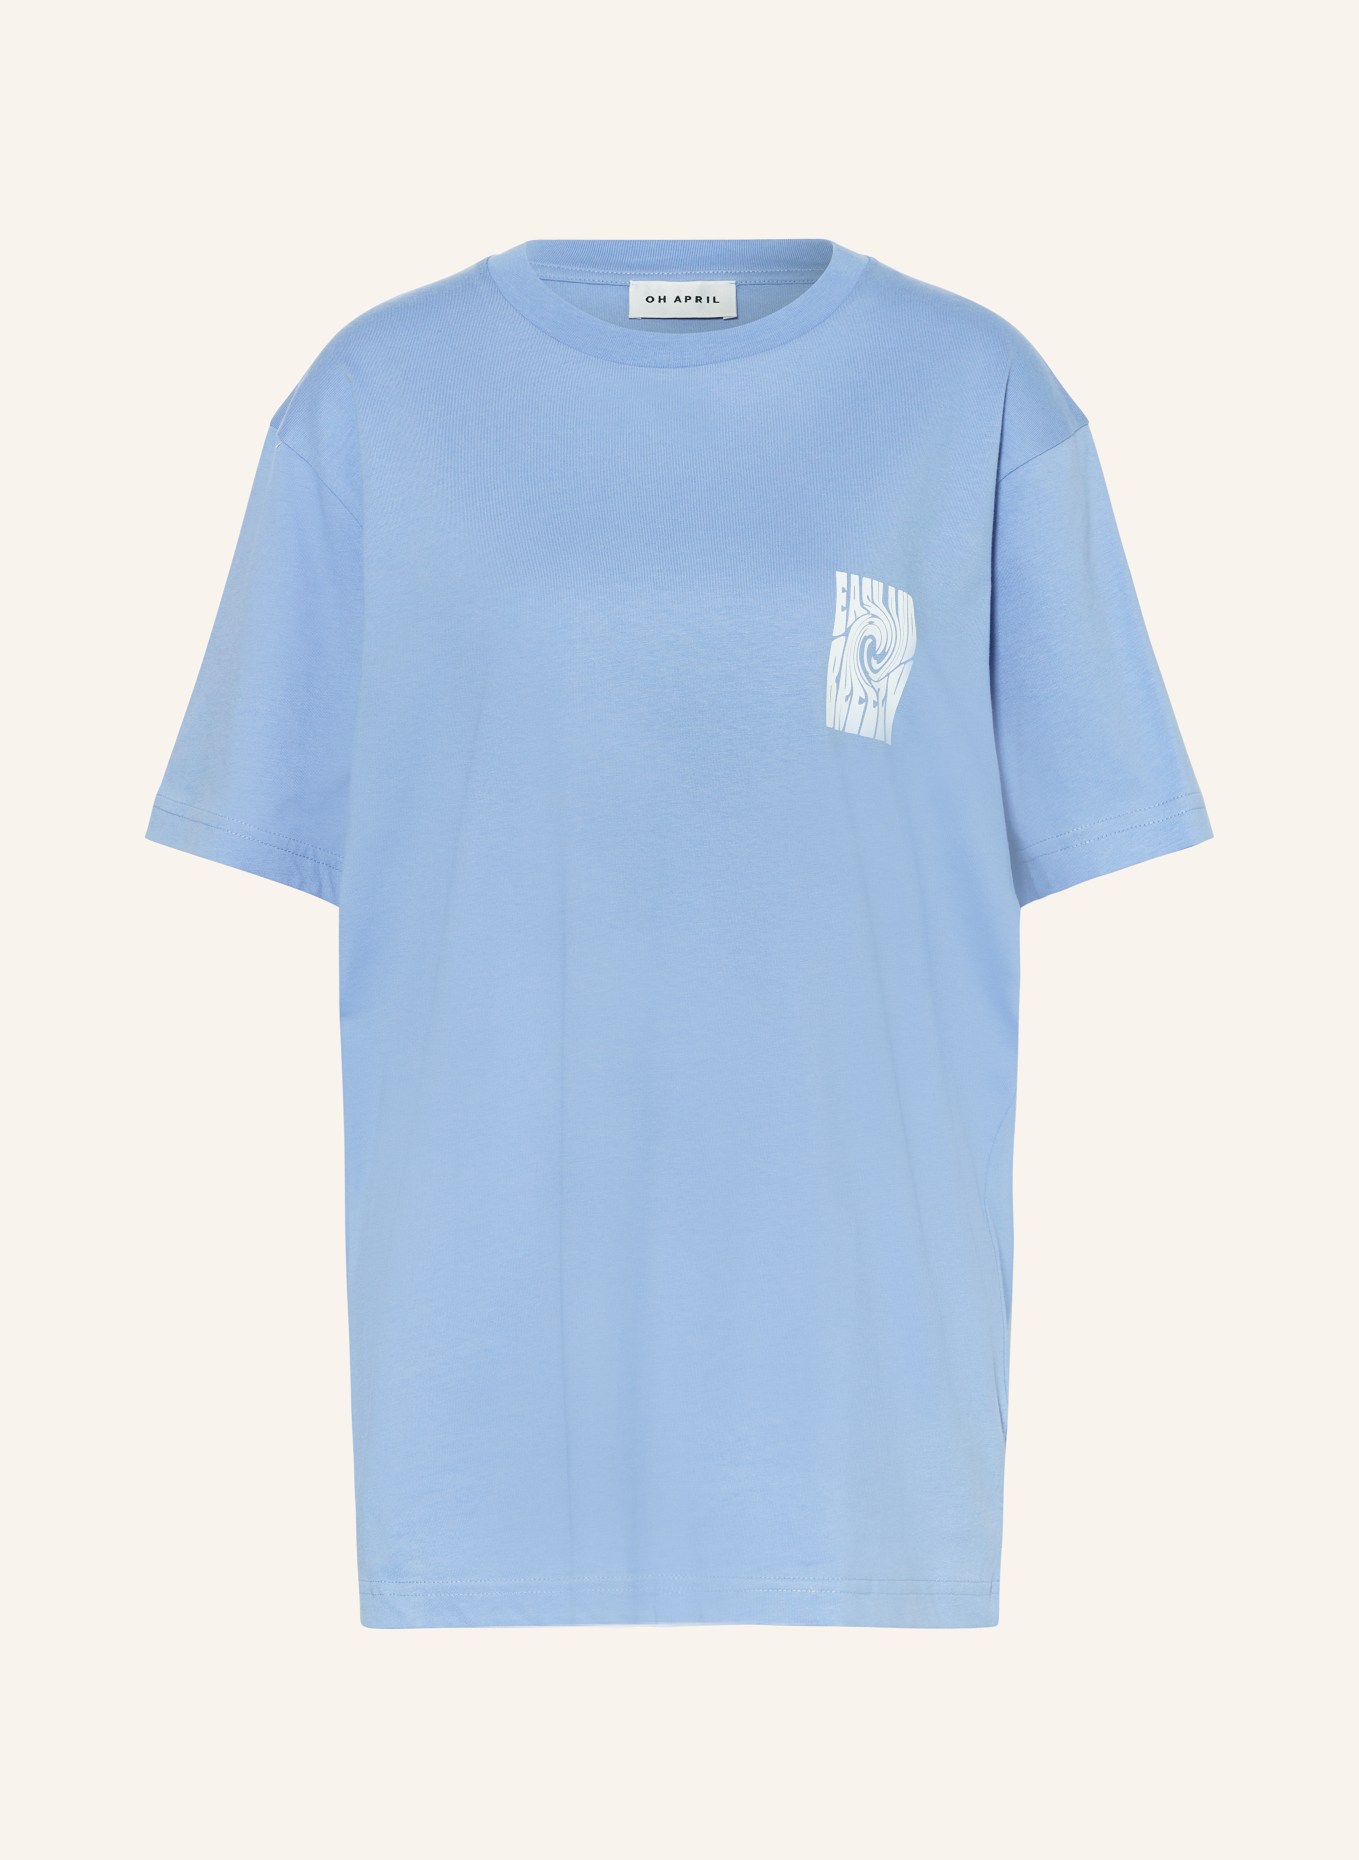 OH APRIL T-shirt BOYFRIEND, Color: BLUE/ WHITE (Image 1)